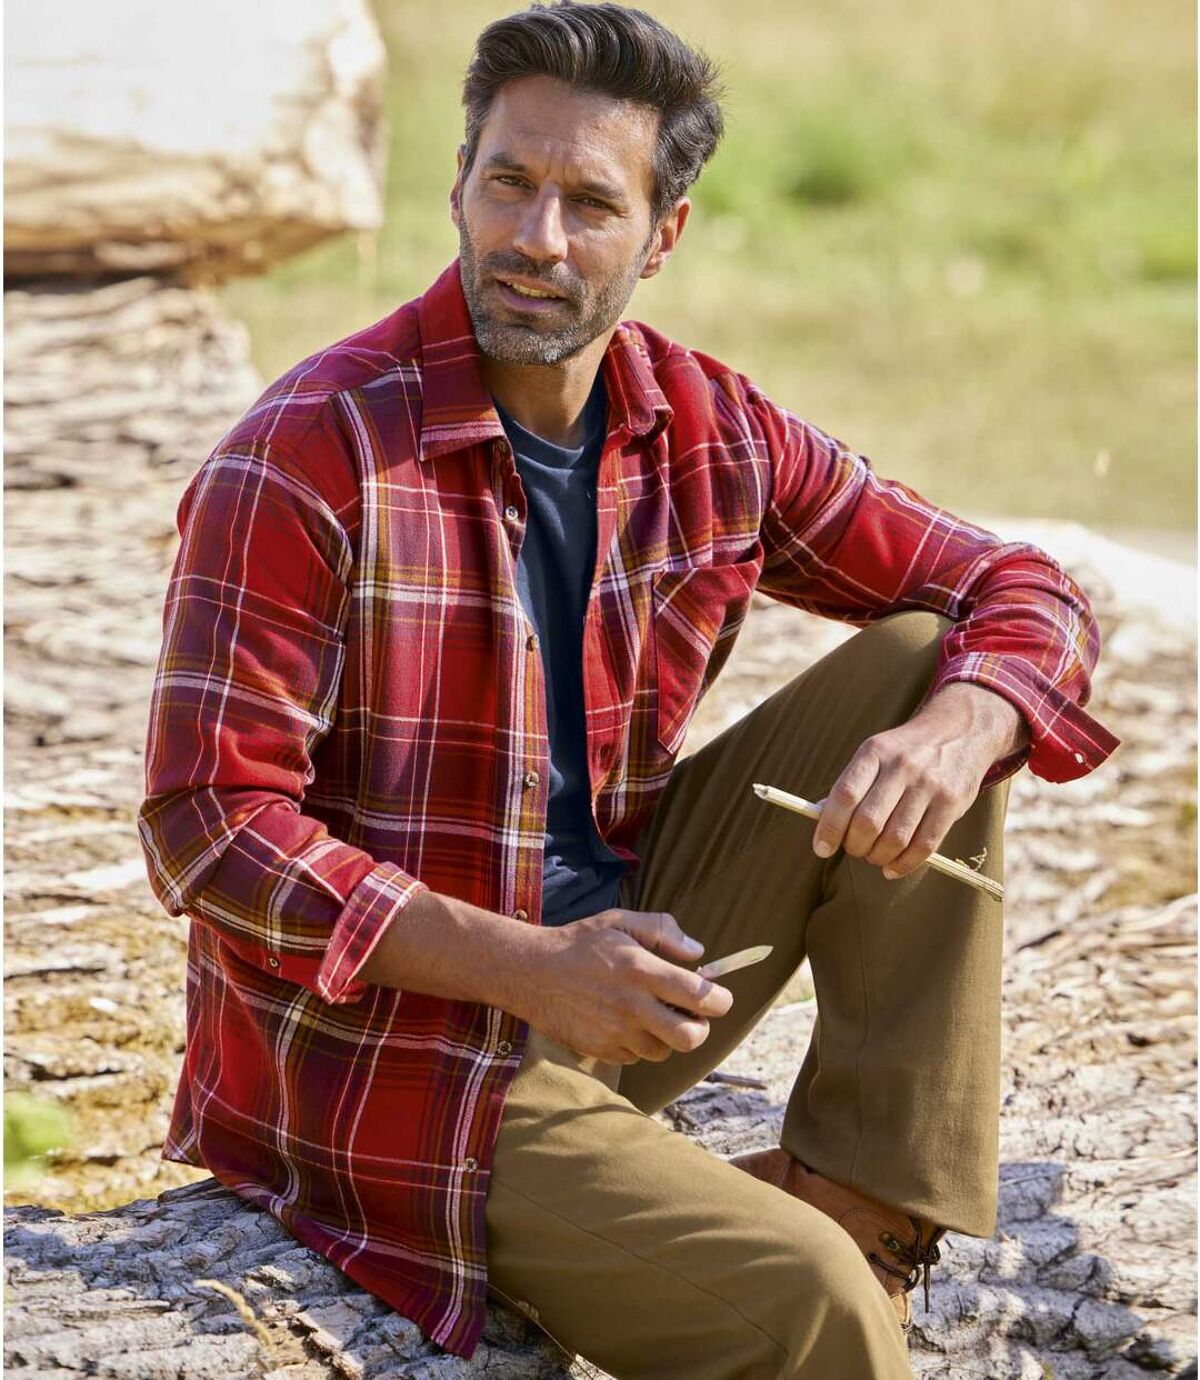 Men's Red Checked Flannel Shirt  Atlas For Men